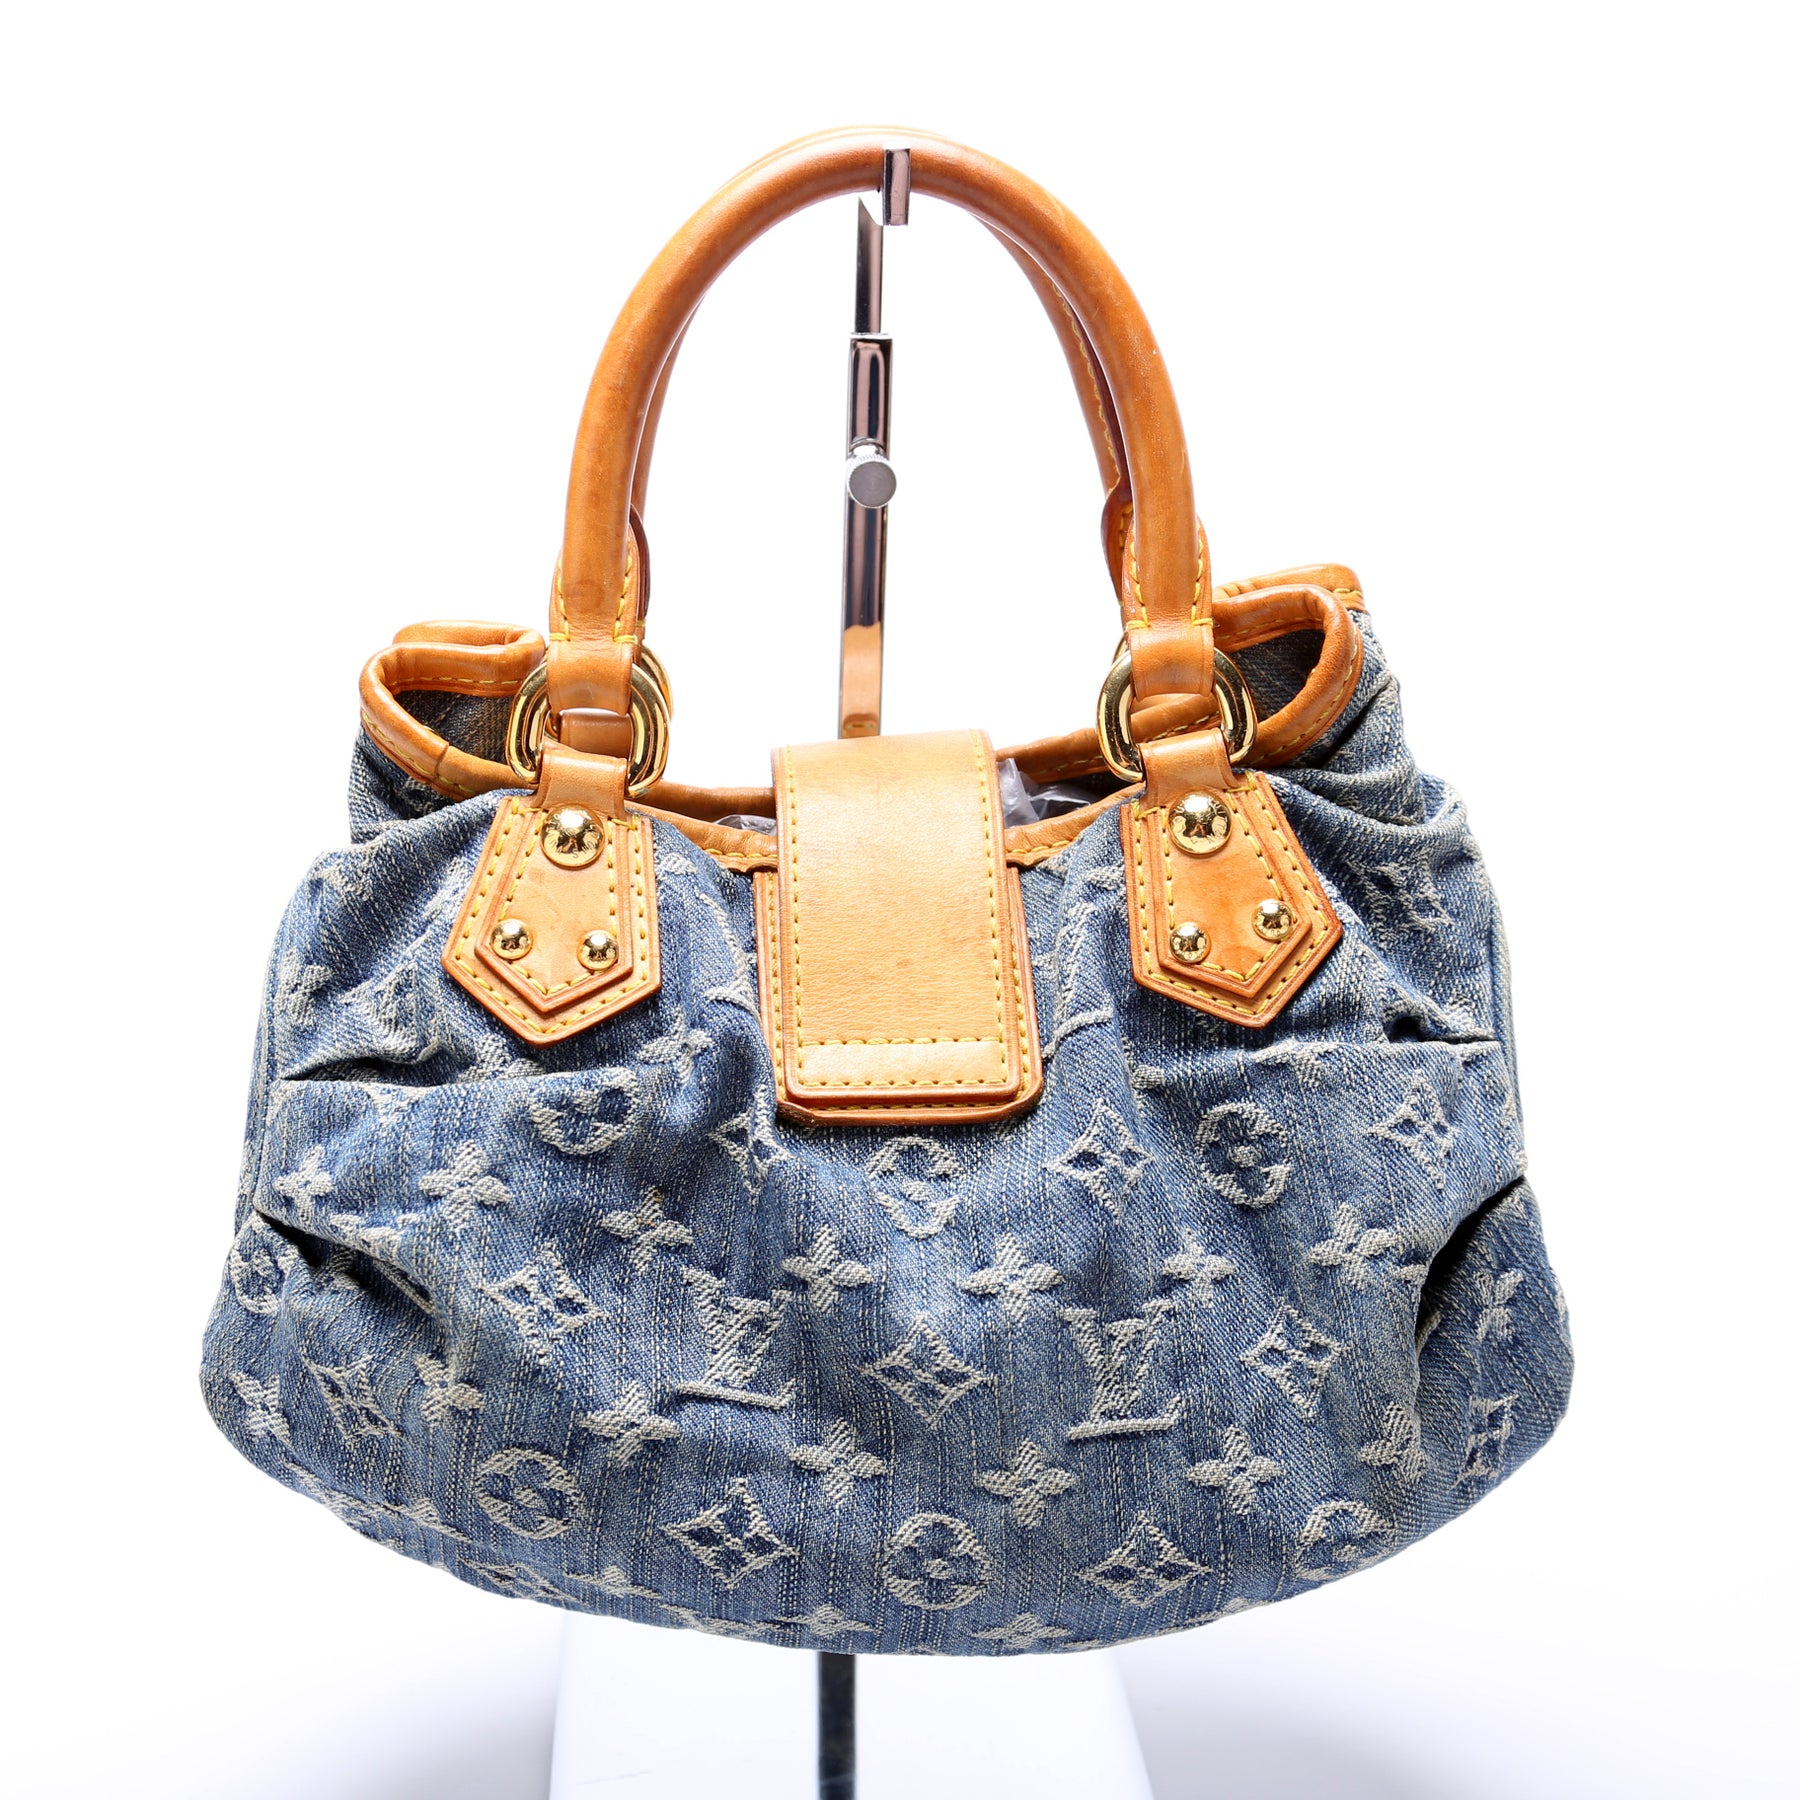 Louis Vuitton - Authenticated Pleaty Handbag - Denim - Jeans Blue for Women, Good Condition